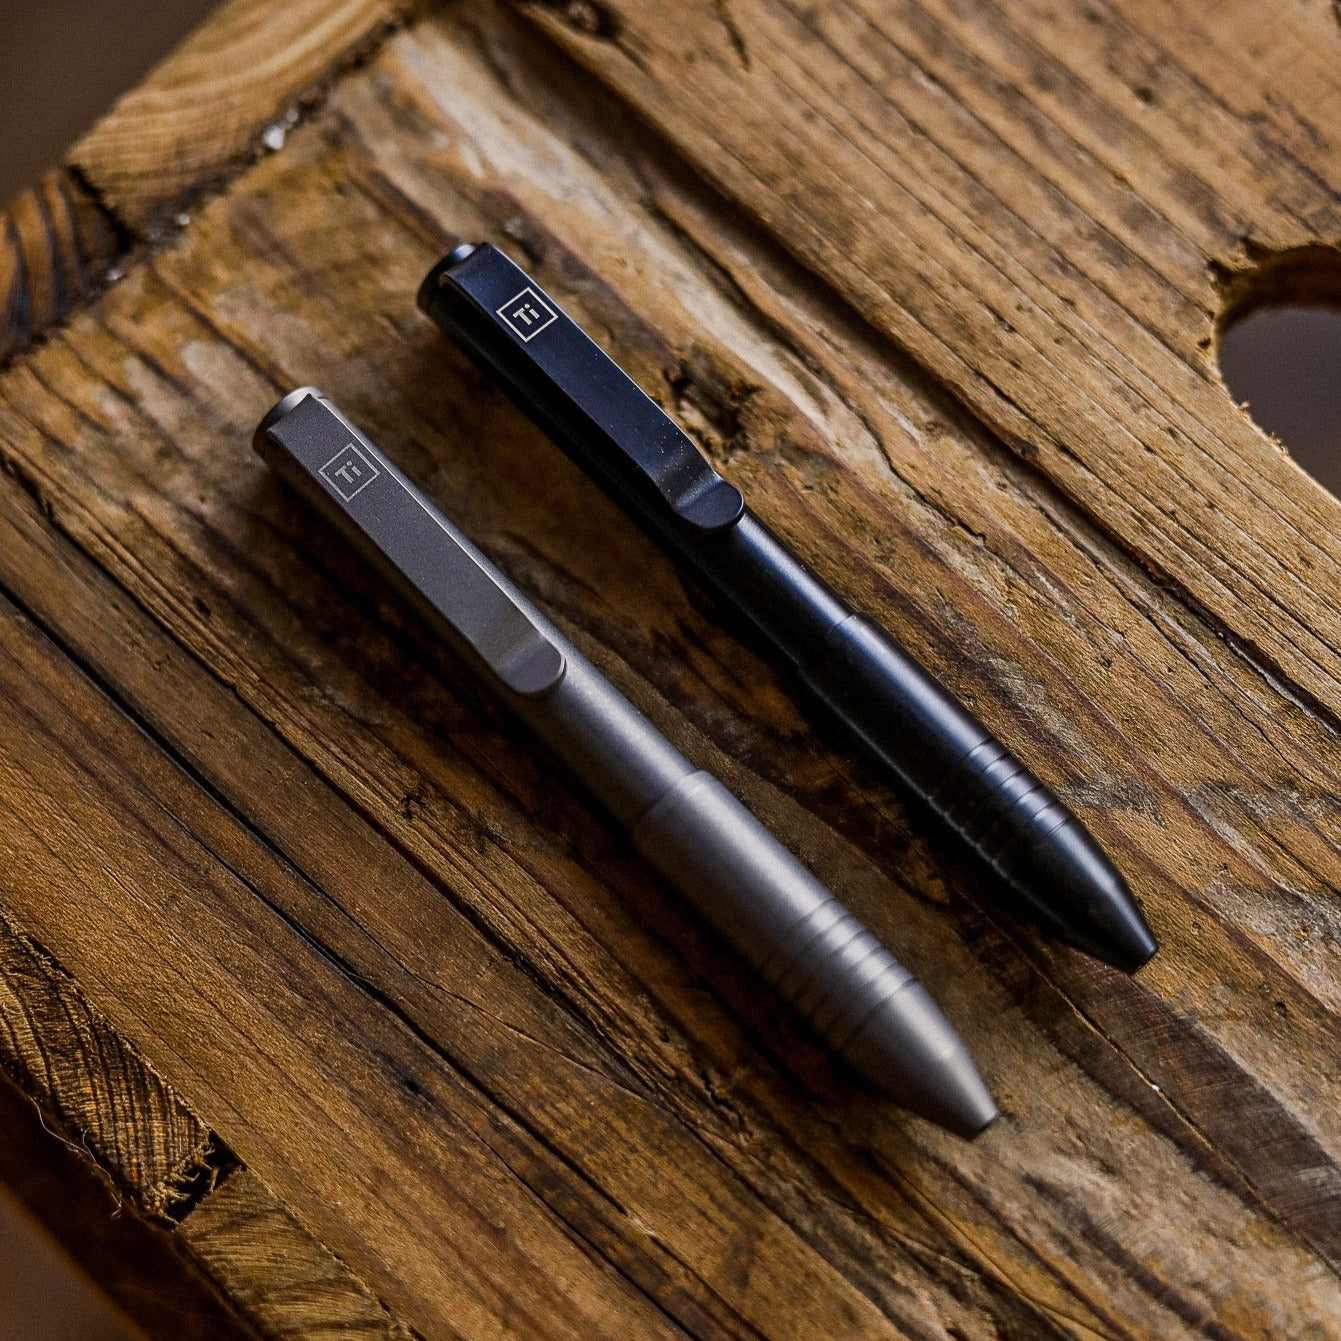 Big Idea Design Titanium Pocket Pro Auto Adjusting Pen - Antique Black